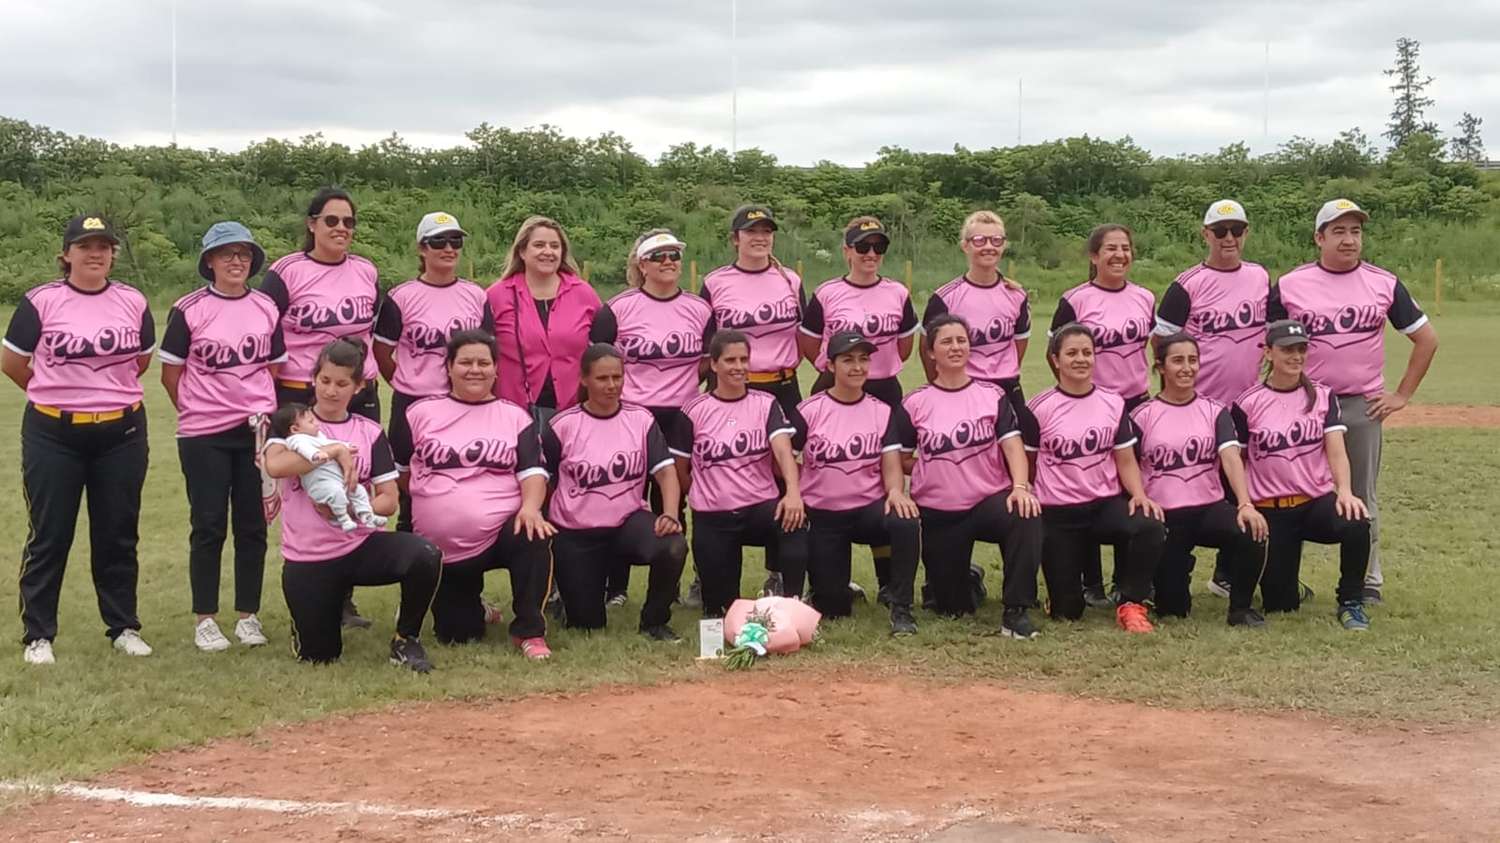 El equipo de "La Olla" usando el color rosa en su camiseta en adhesión a la finalidad con que se desarrolló este torneo de sóftbol femenino en Gualeguay.